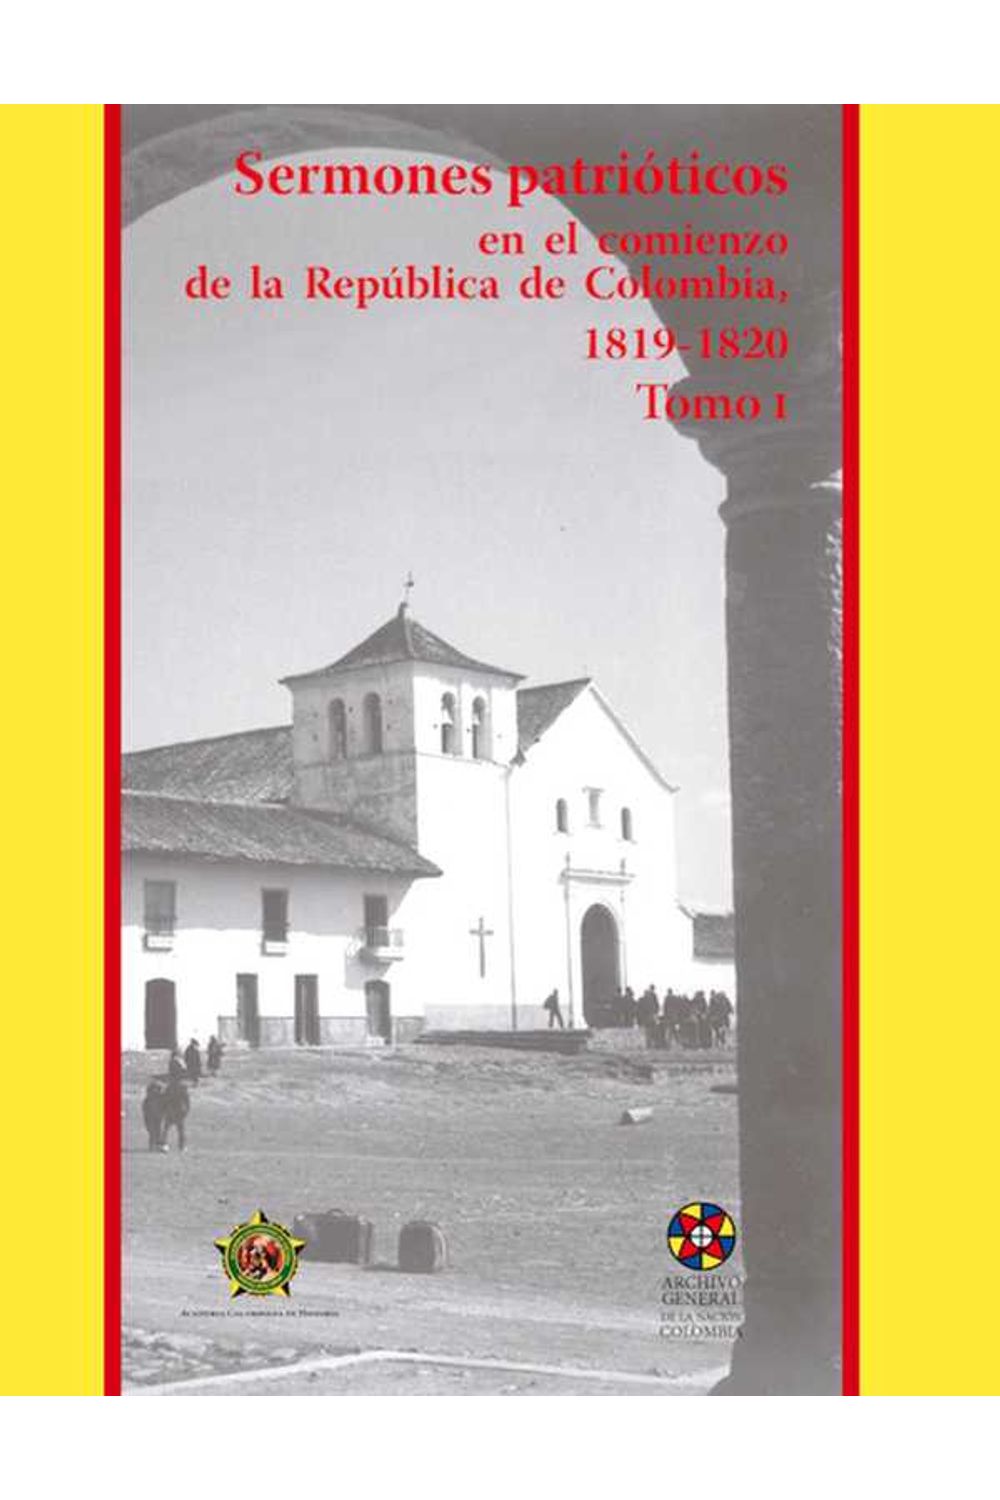 bw-sermones-patrioacuteticos-en-el-comienzo-de-la-repuacuteblica-de-colombia-18191820-academia-colombiana-de-historia-9789585154537